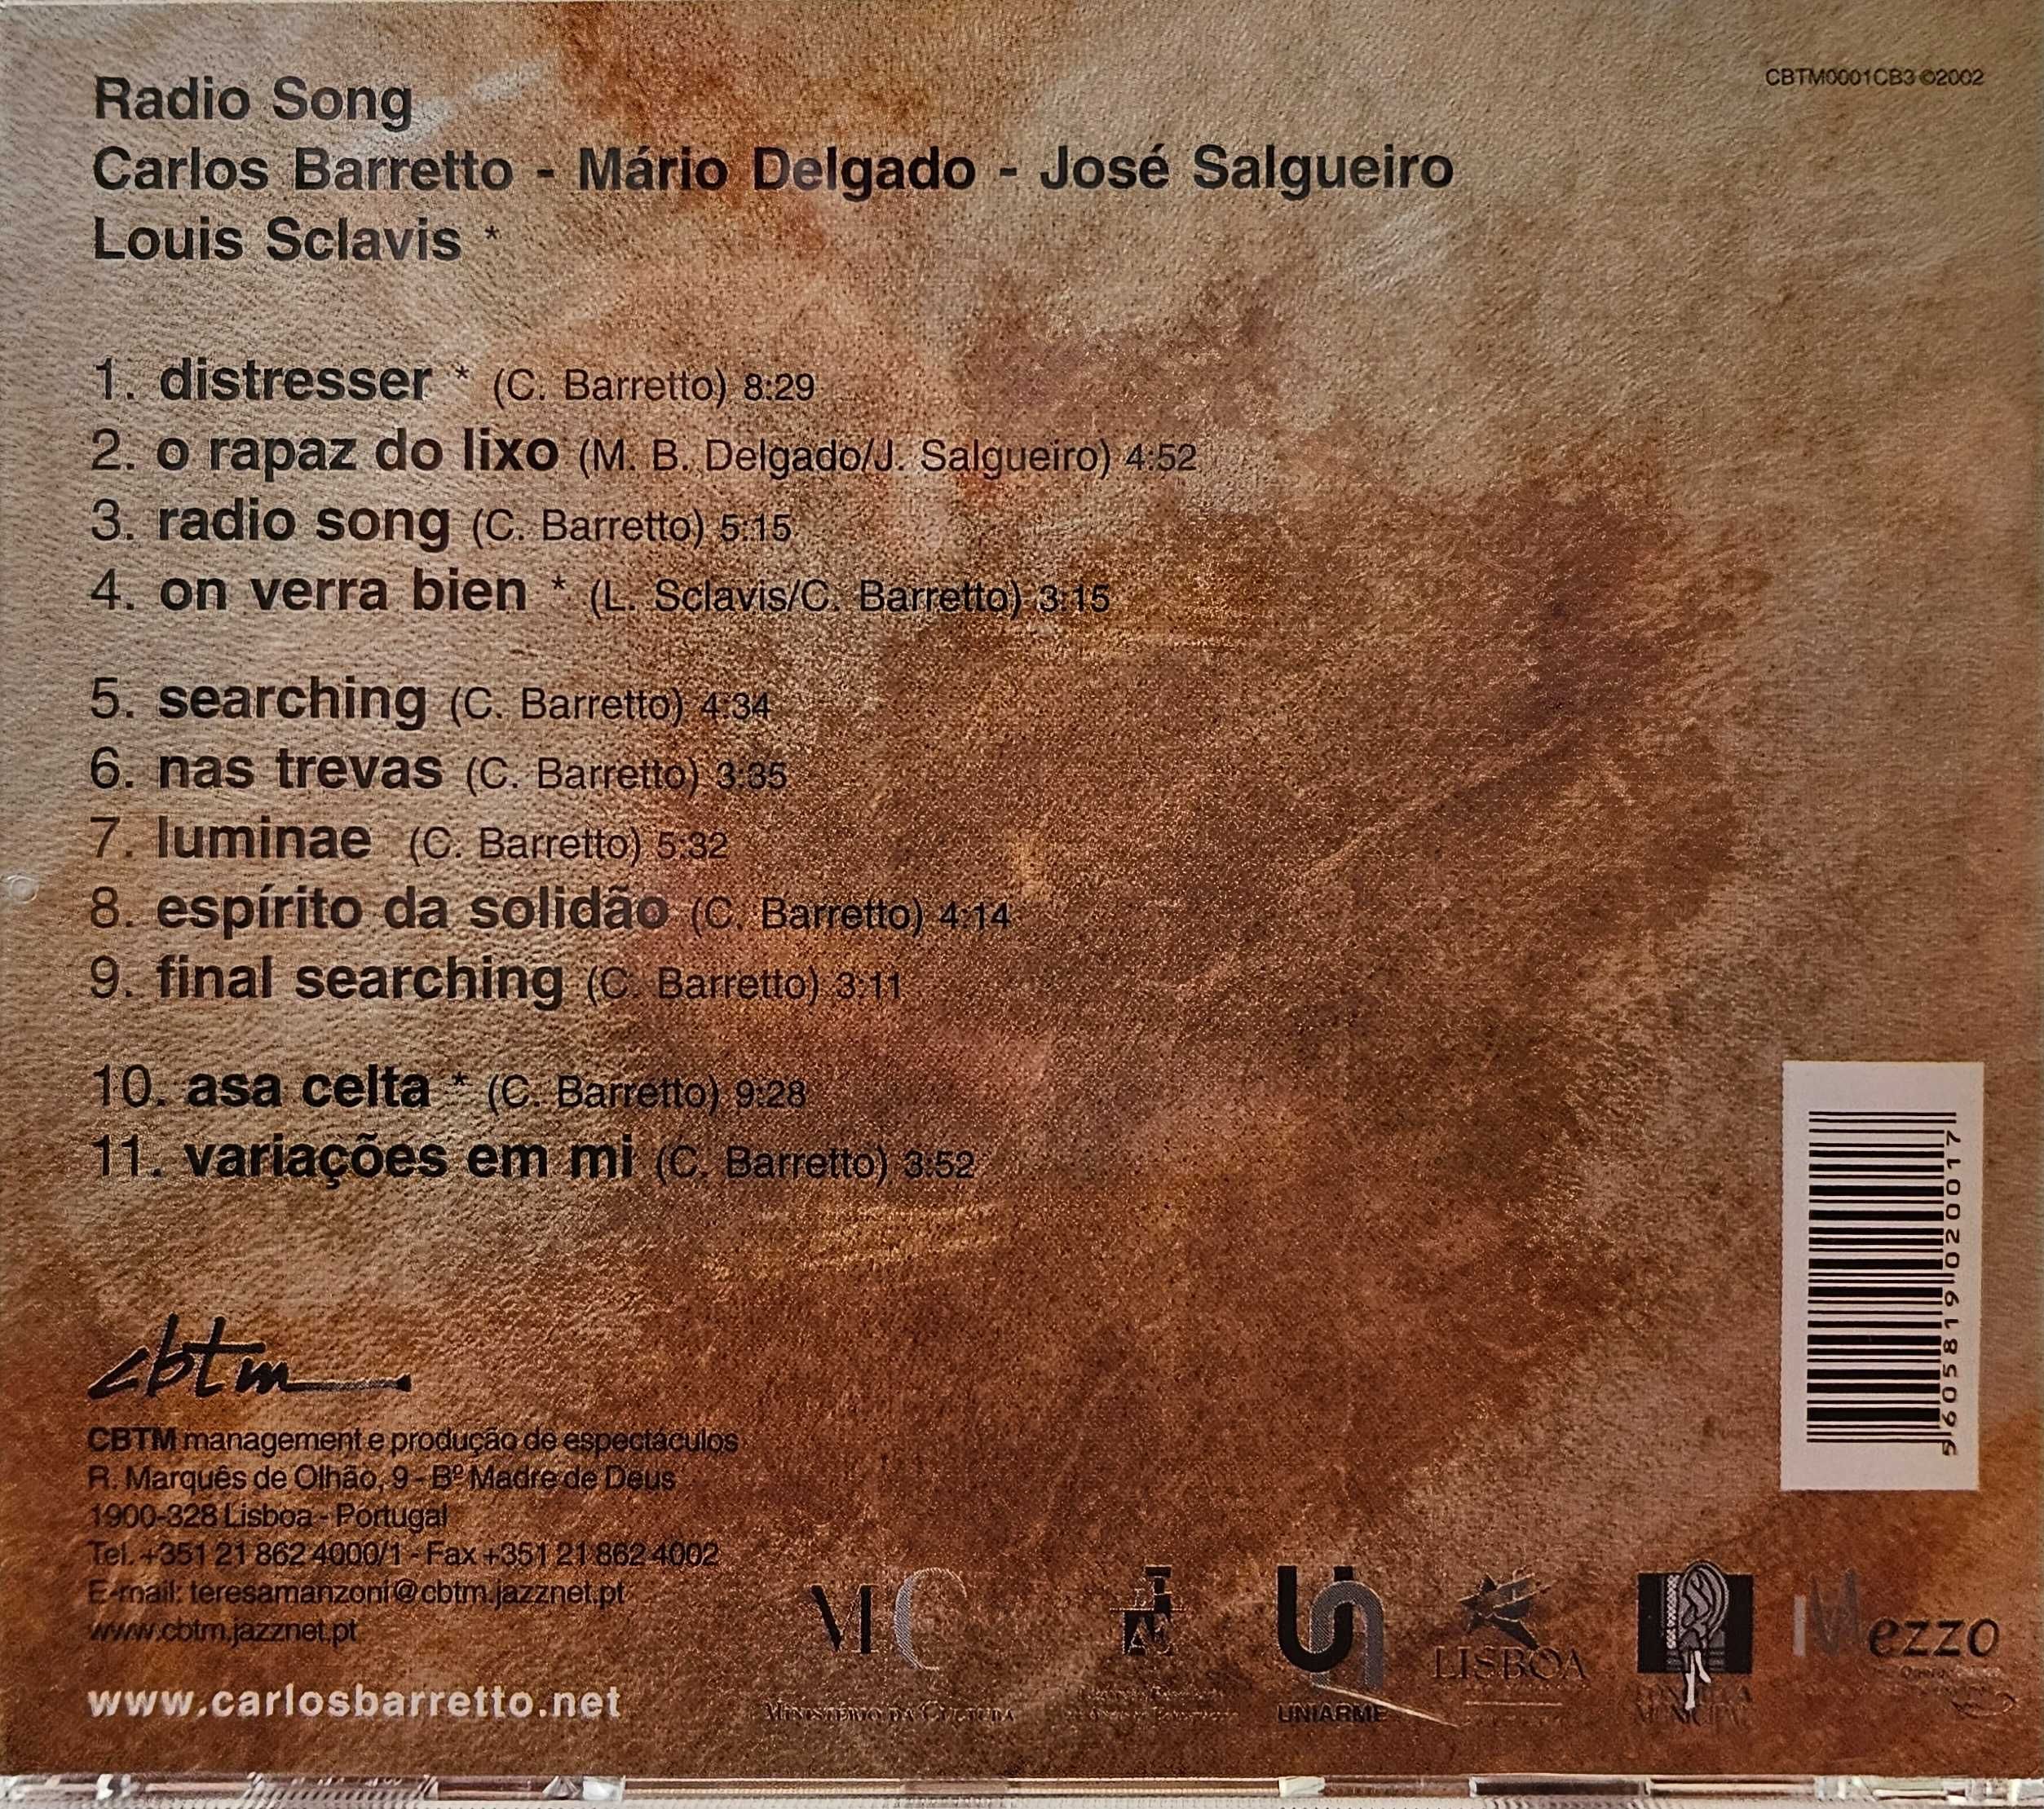 CD - Carlos Barreto Trio - Radio Song